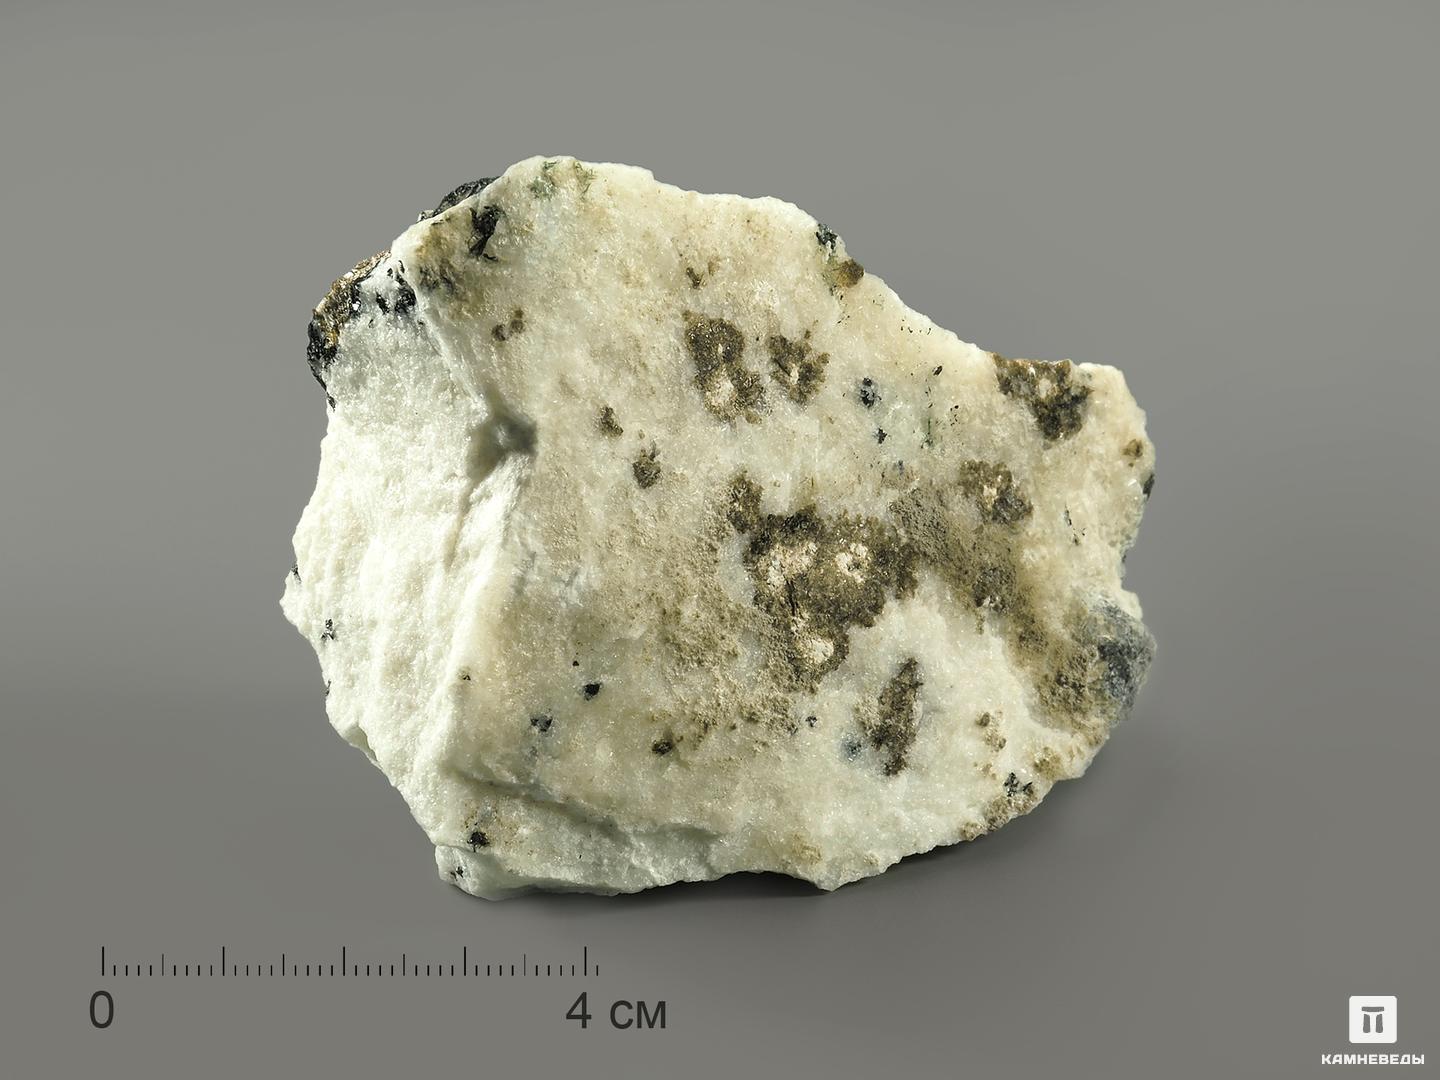 Келдышит с эвдиалитом в альбите, 6,6х4,7х3,5 см